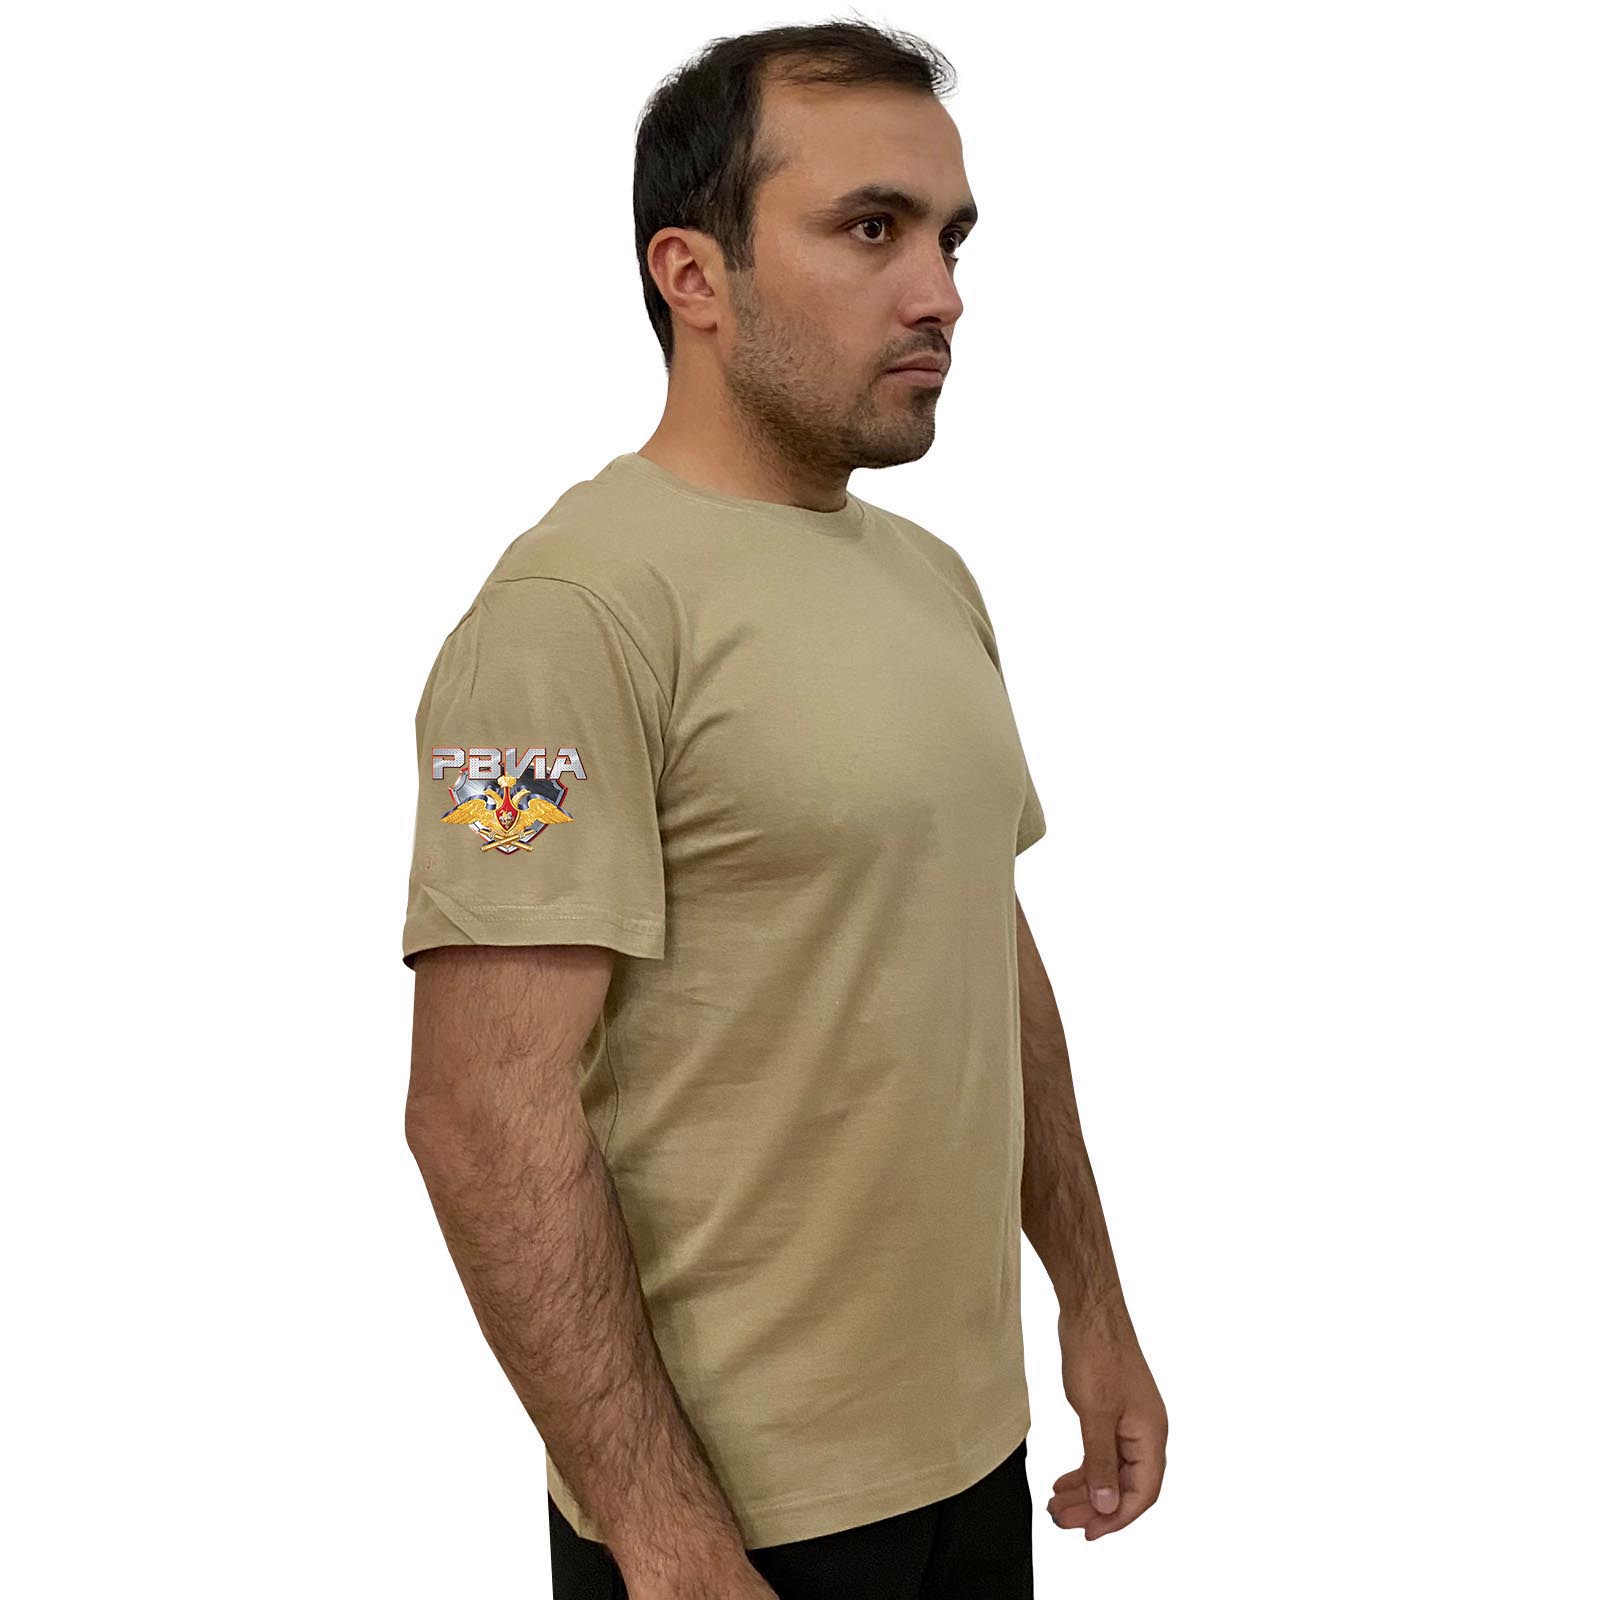 Купить стильную футболку хаки-песок с термотрансфером РВиА онлайн